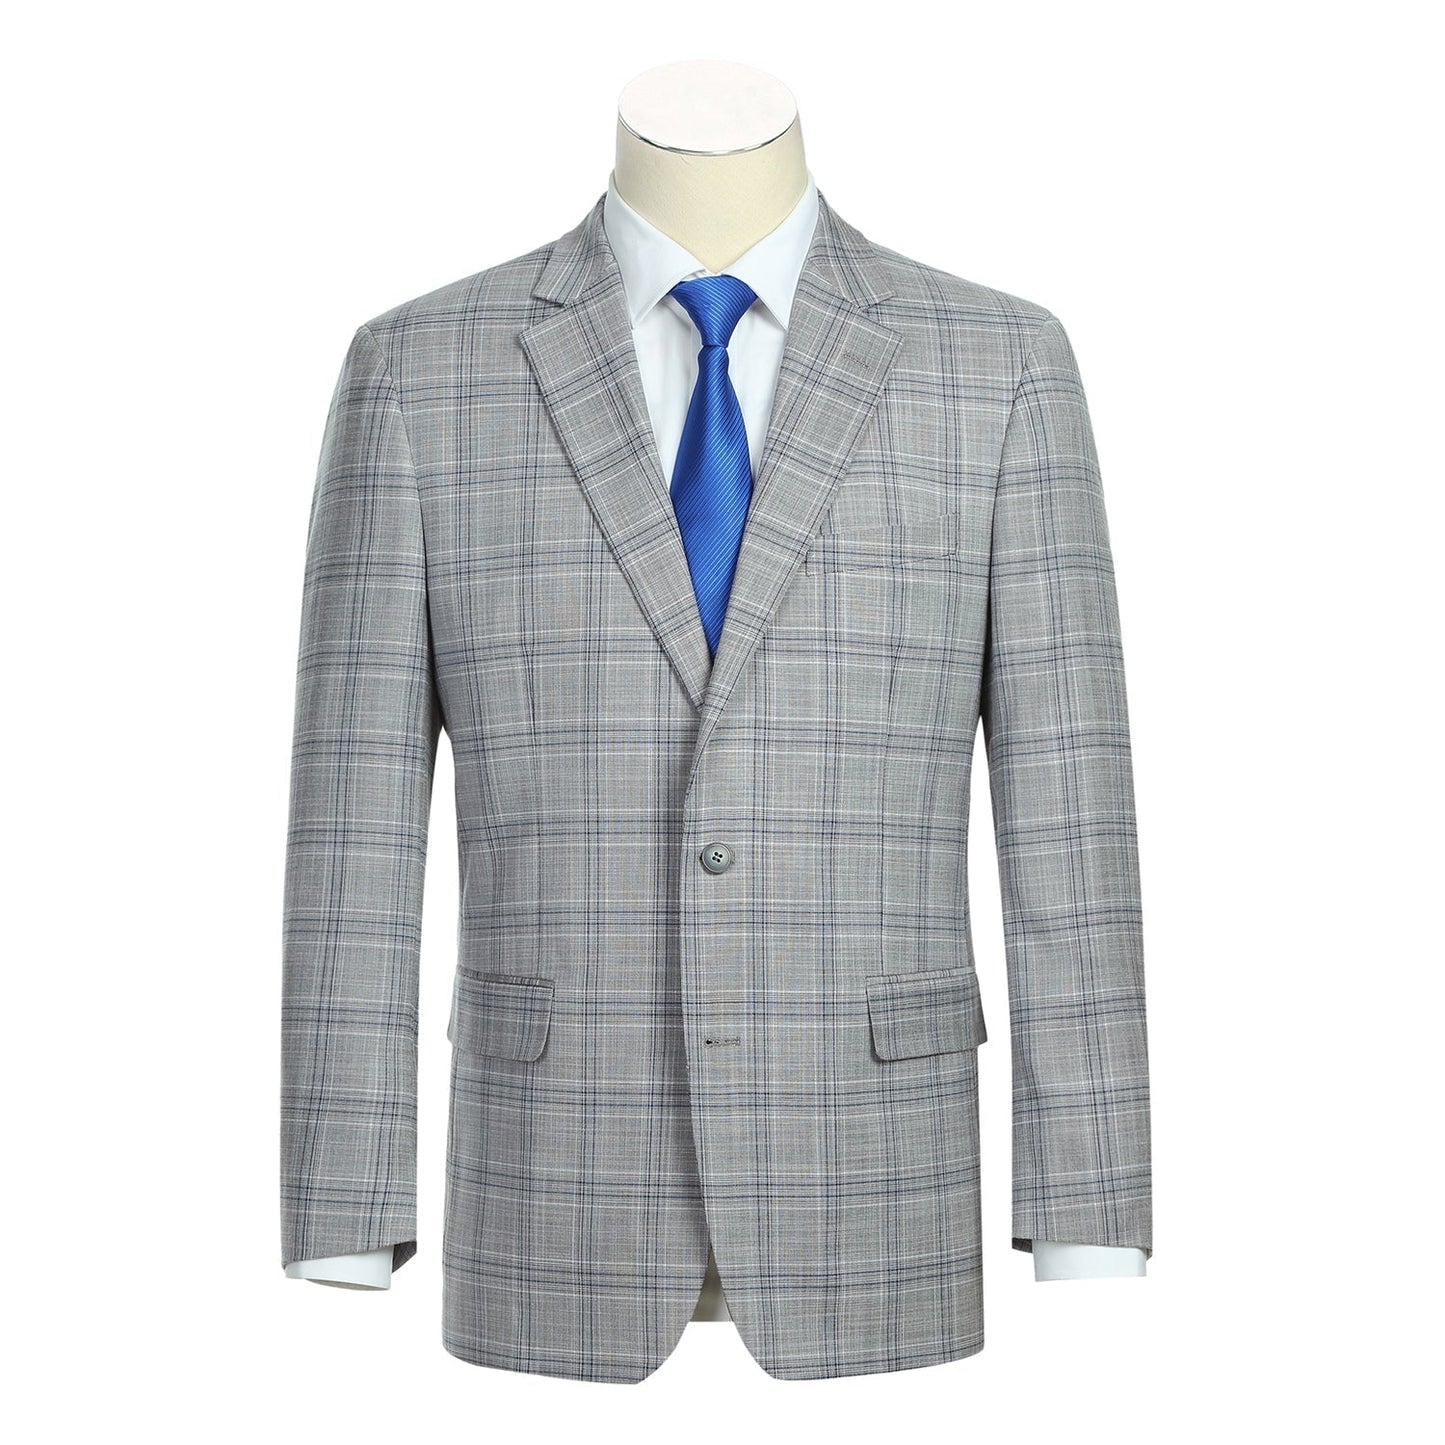 293-23 Men's Classic Fit Light Grey Plaid Suit